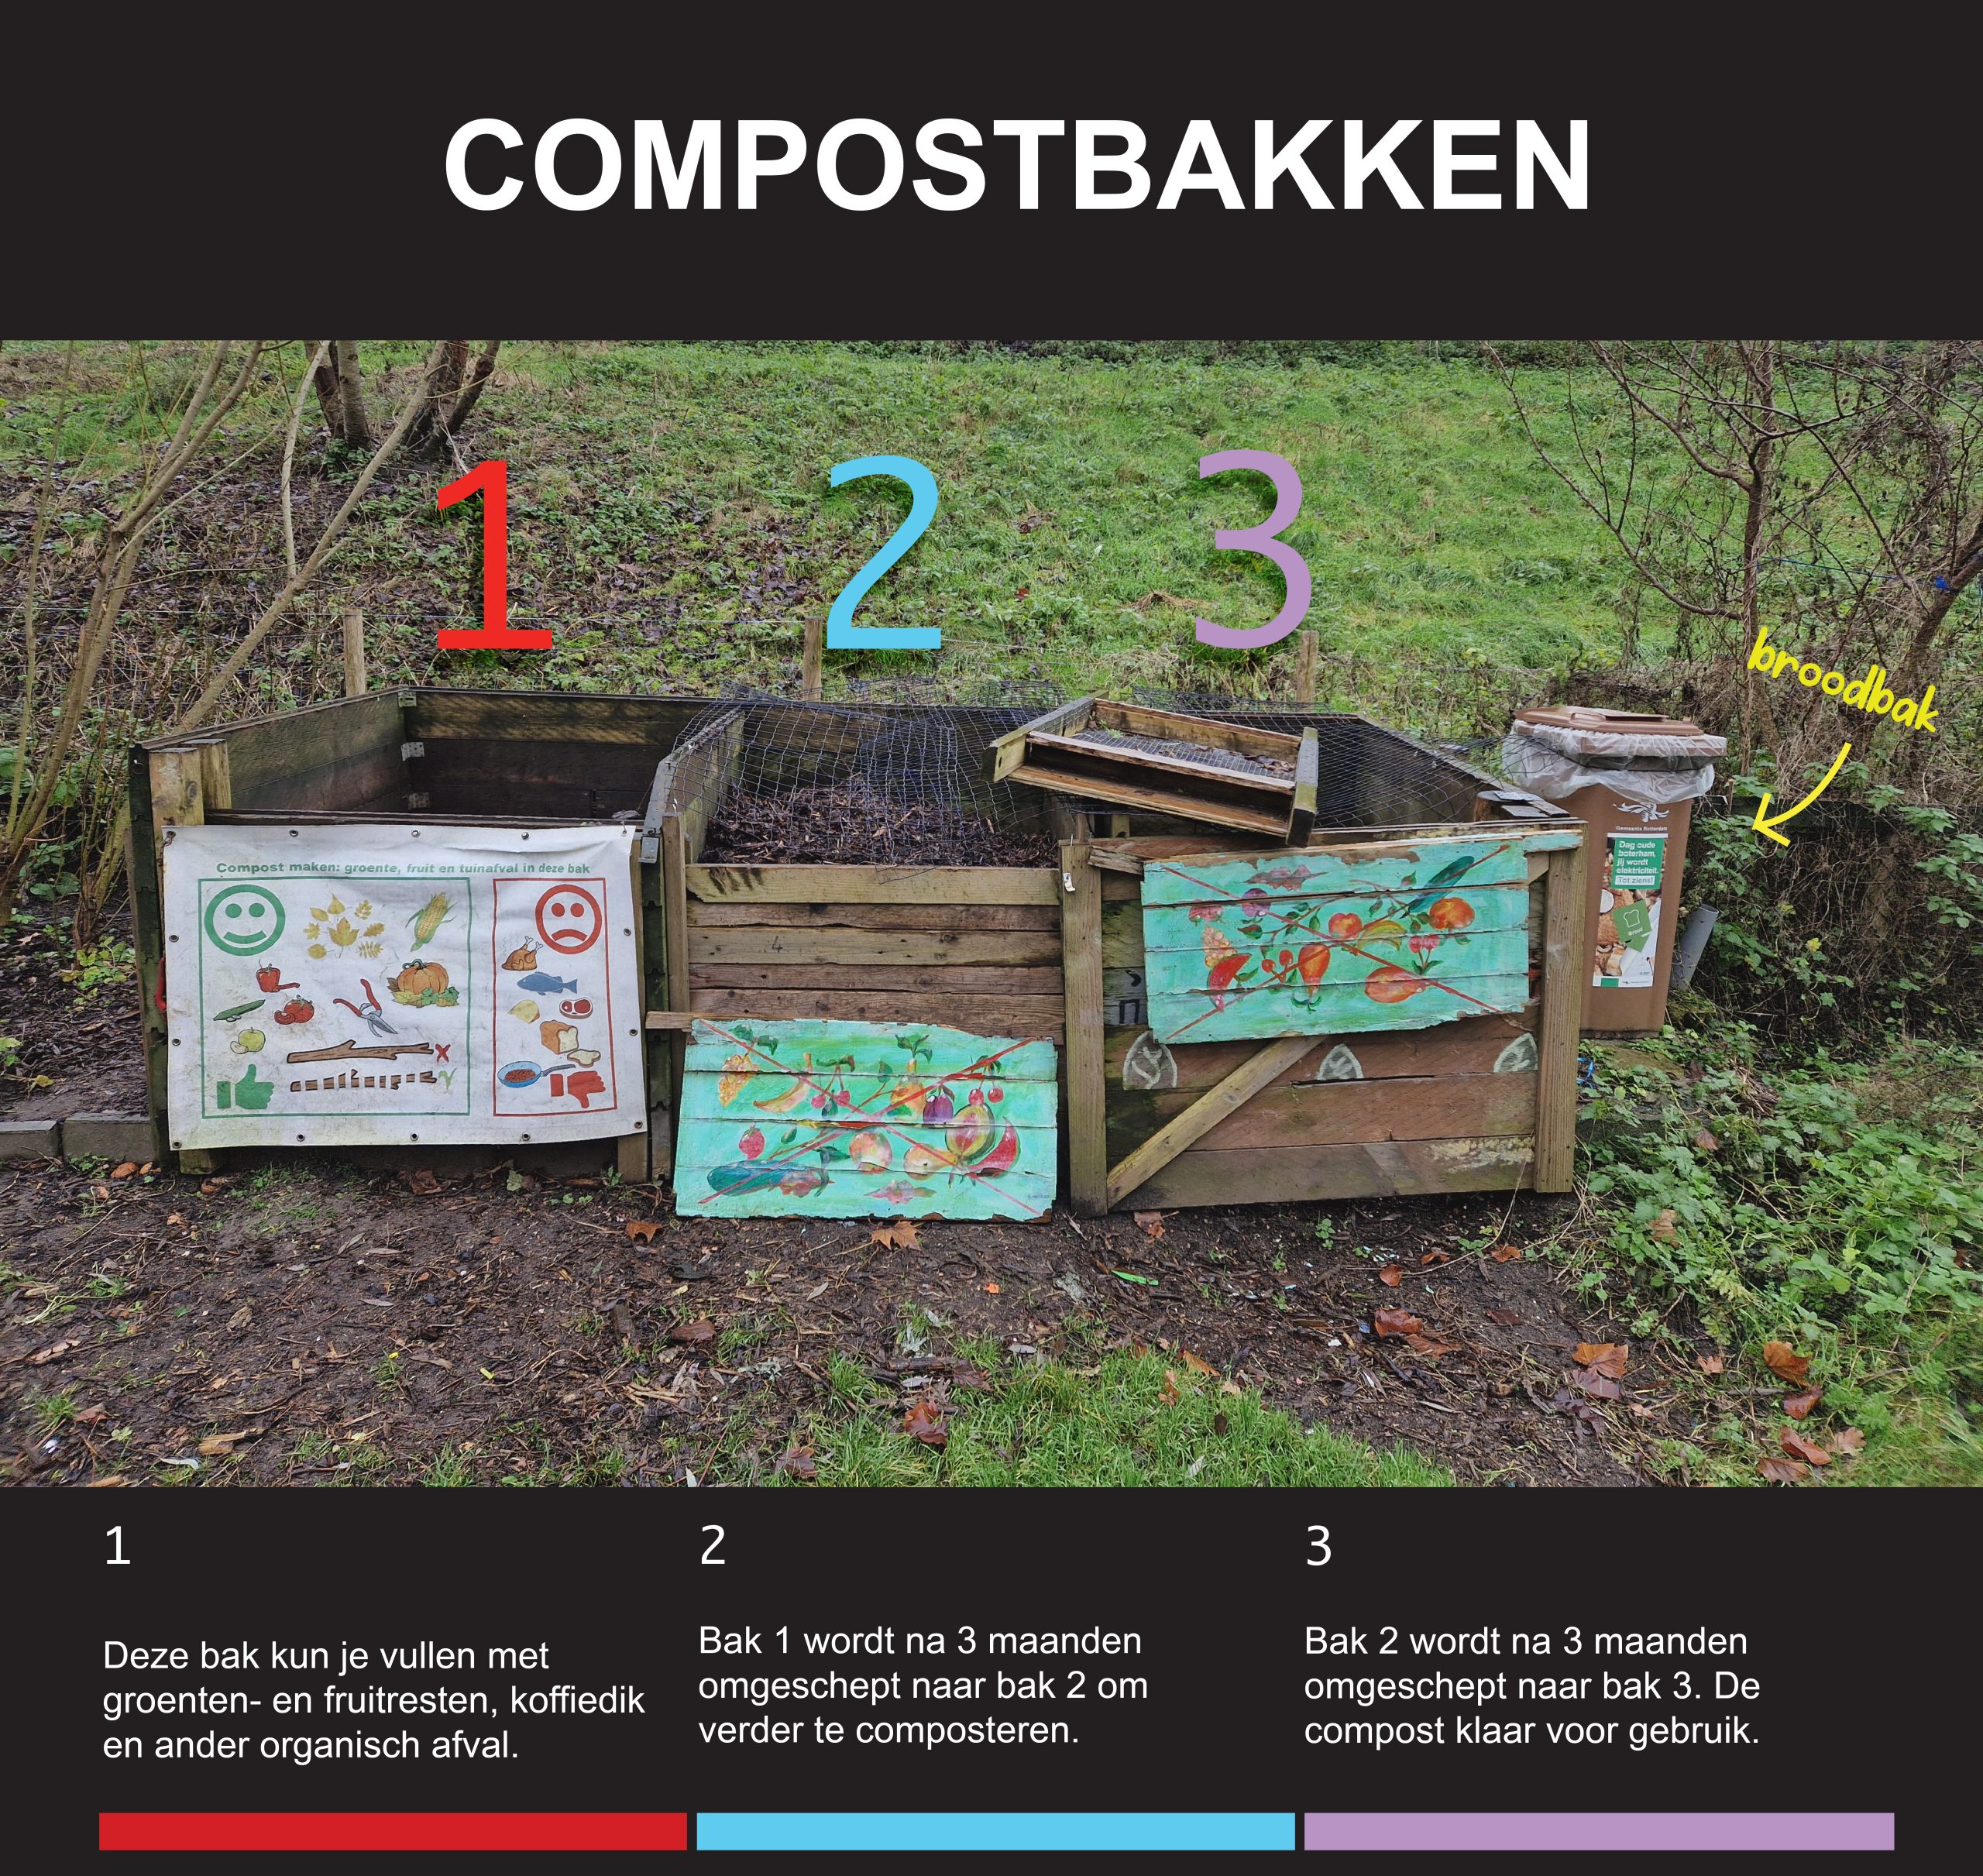 Compost wordt gemaakt met behulp van deze drie compostbakken.